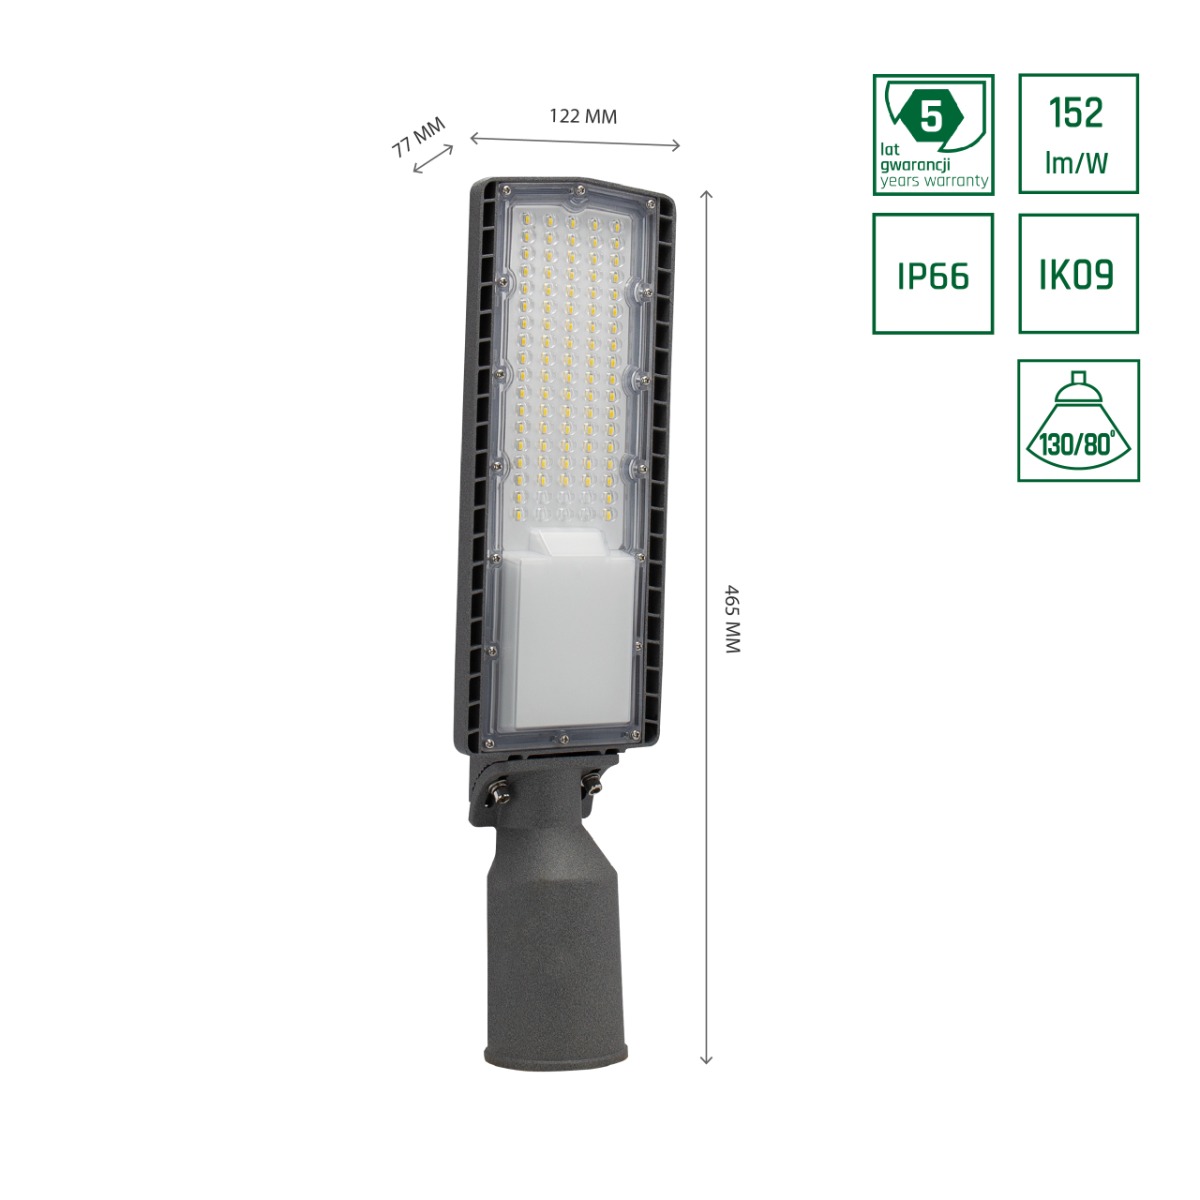 LED-Straßenbeleuchtung 50 W, kippbar, 152 L/W, IP66